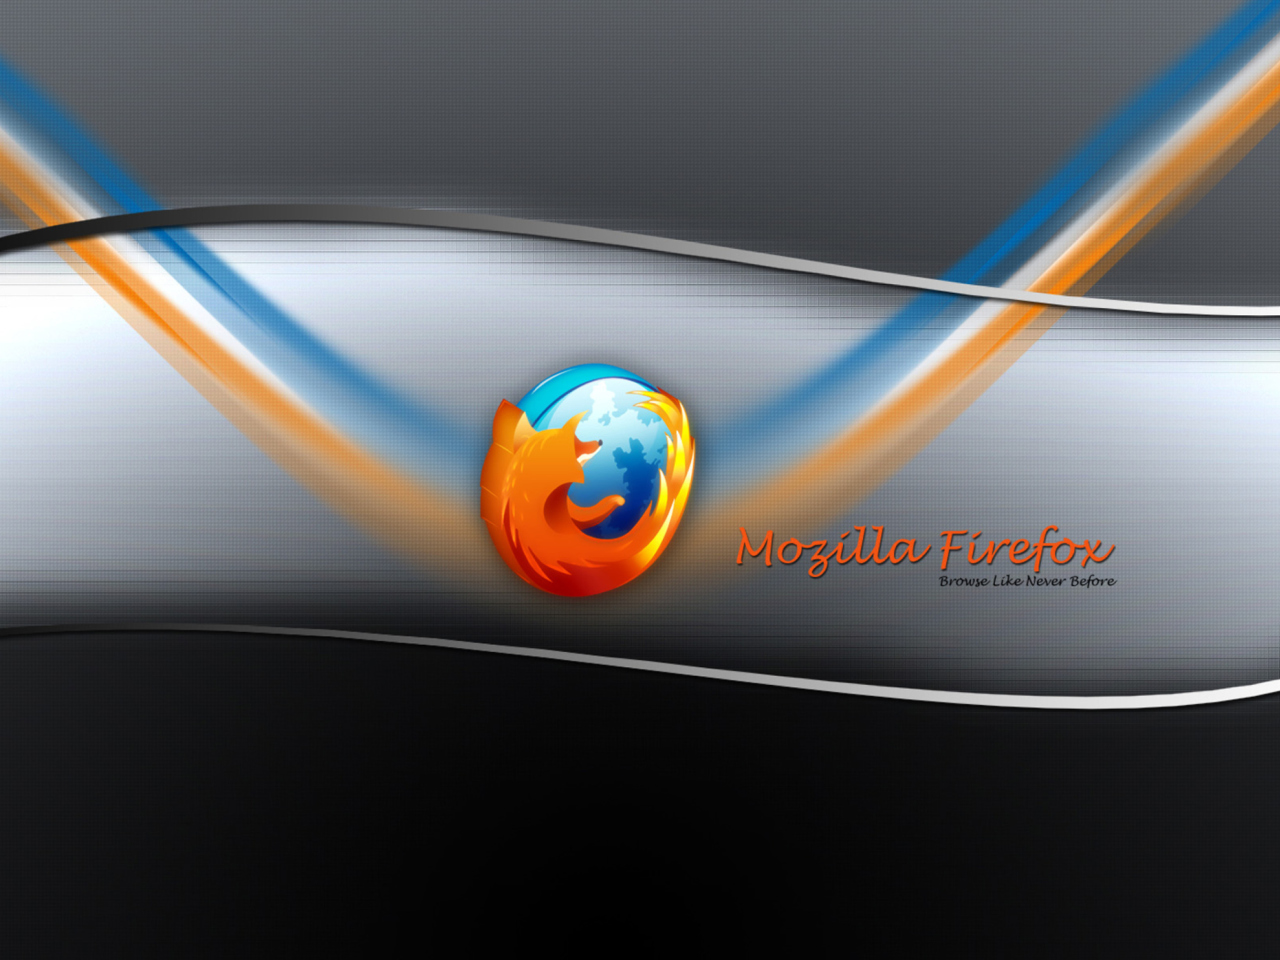 Mozilla Firefox wallpaper 1280x960